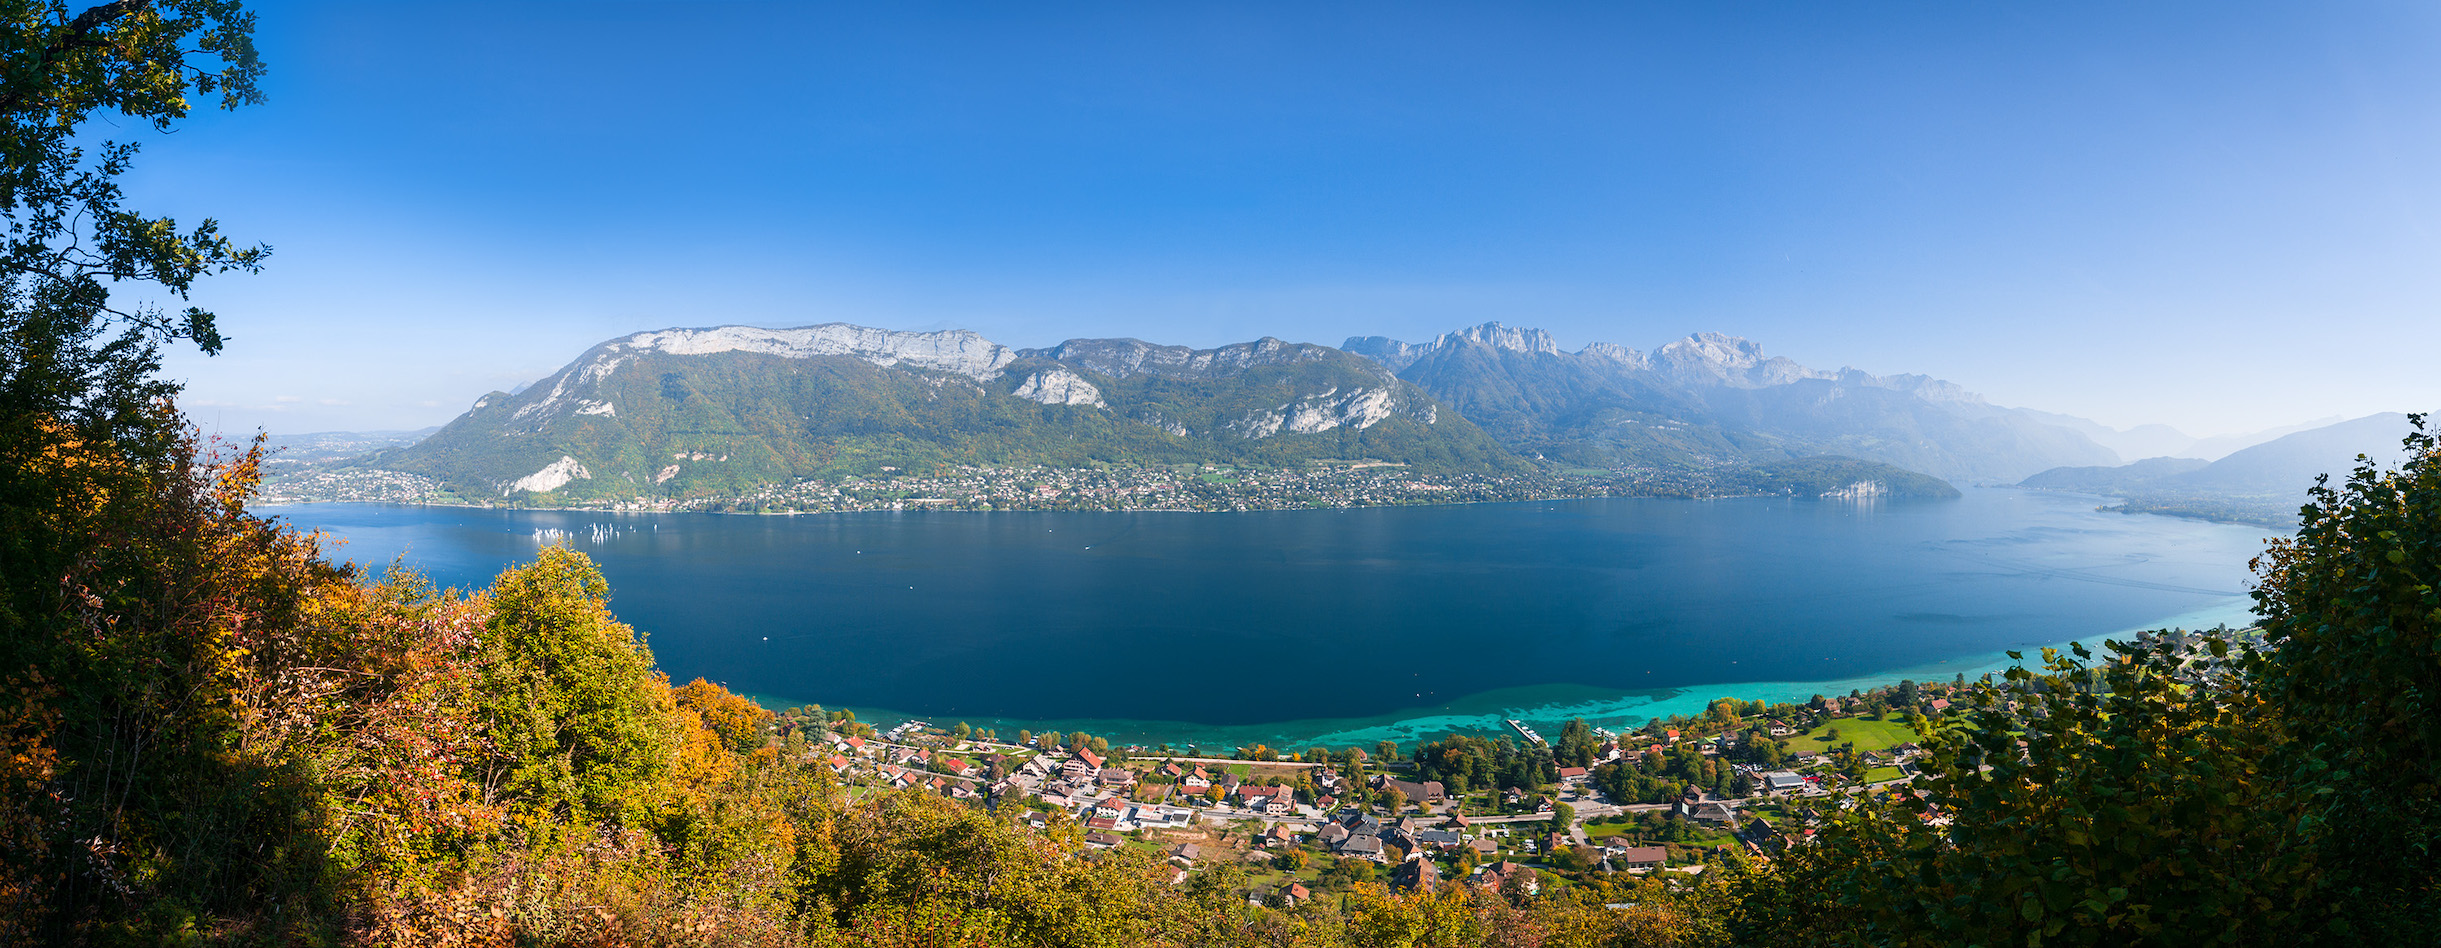 Dans son beau livre à paraître, Rémi Masson nous invite à un fascinant voyage à la découverte des trois plus grands lacs des Alpes. © Rémi Masson, Tous droits réservés